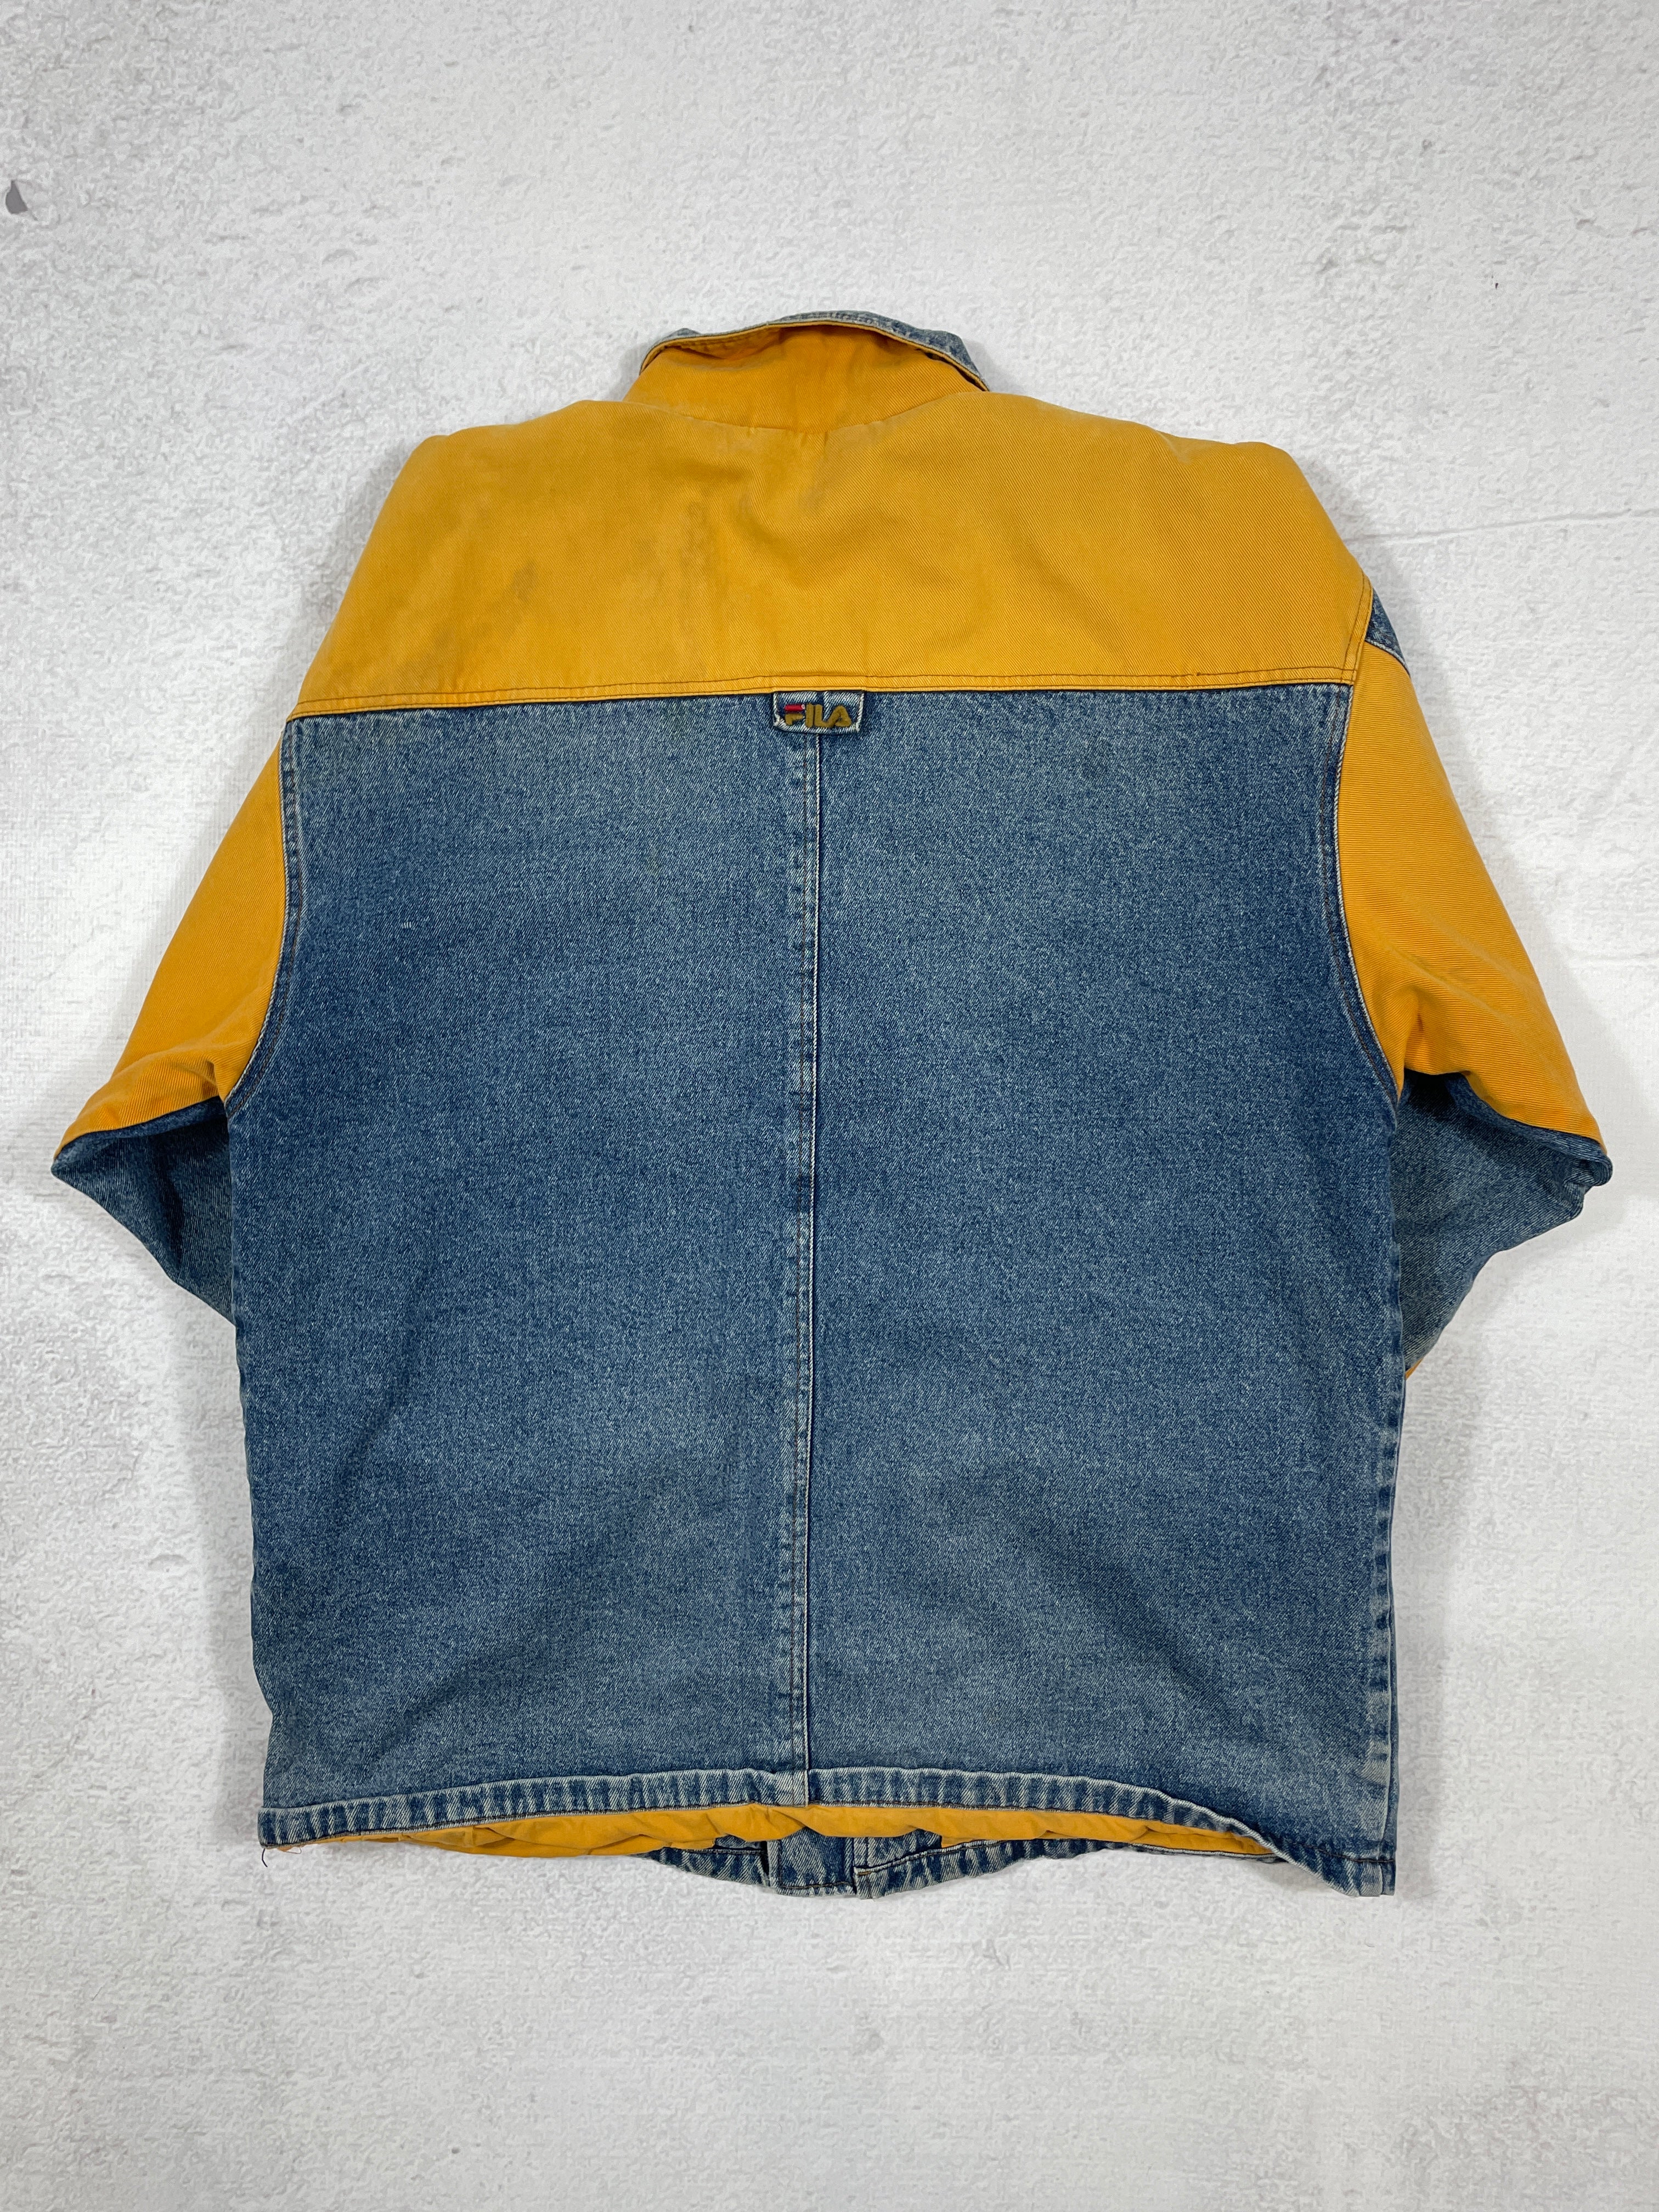 Vintage Fubu Denim Jacket - Men's 2XL